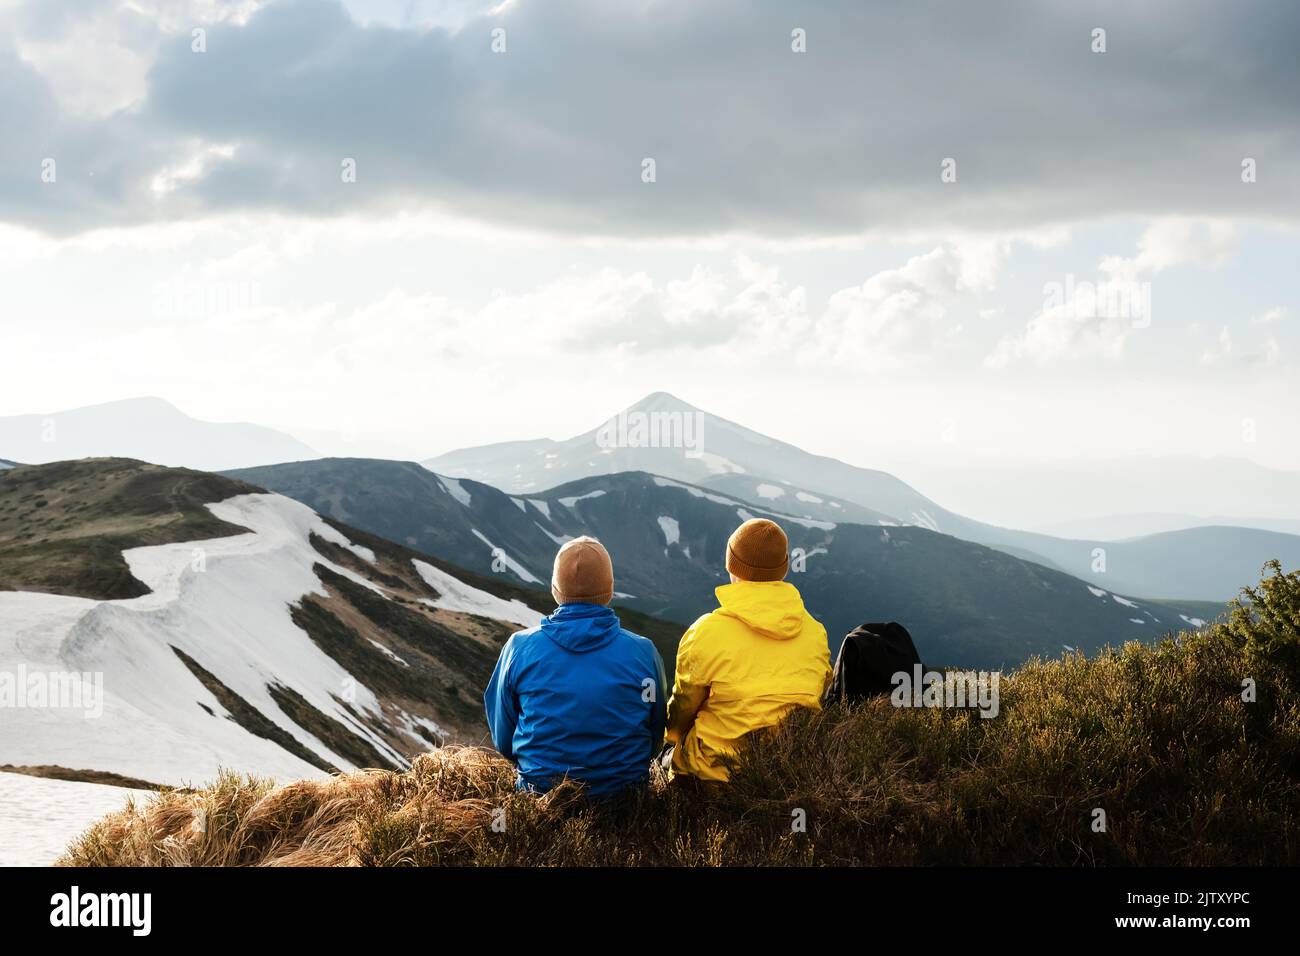 Deux touristes se trouve au bord d'un sommet de montagne. Montagnes brumeuses en arrière-plan. Les Carpates ukrainiens, Ukraine. Photographie de paysage Banque D'Images